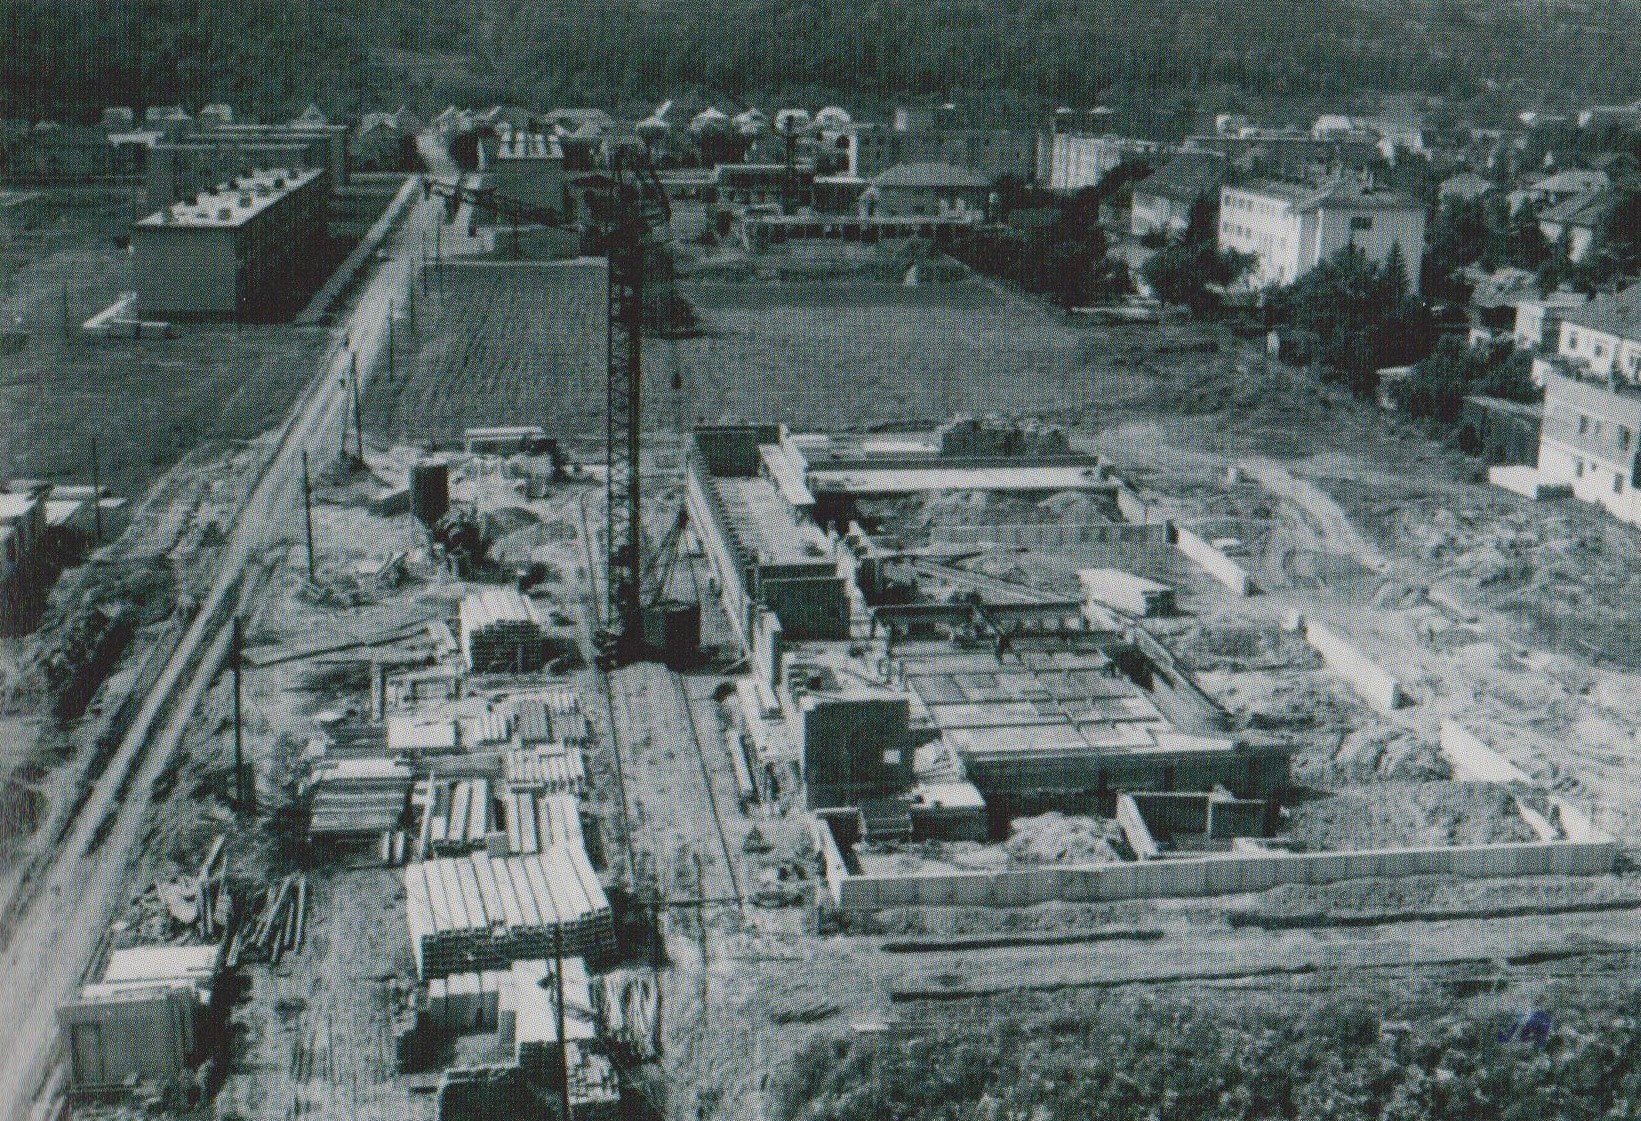 Začiatok výstavby tzv. Závodného klubu ROH Makyta v Púchove, ktorý dnes väčšina obyvateľov regiónu pozná ako Dom kultúry s prívlastkom "starý". Fotografia je približne z rokov 1968/1969.